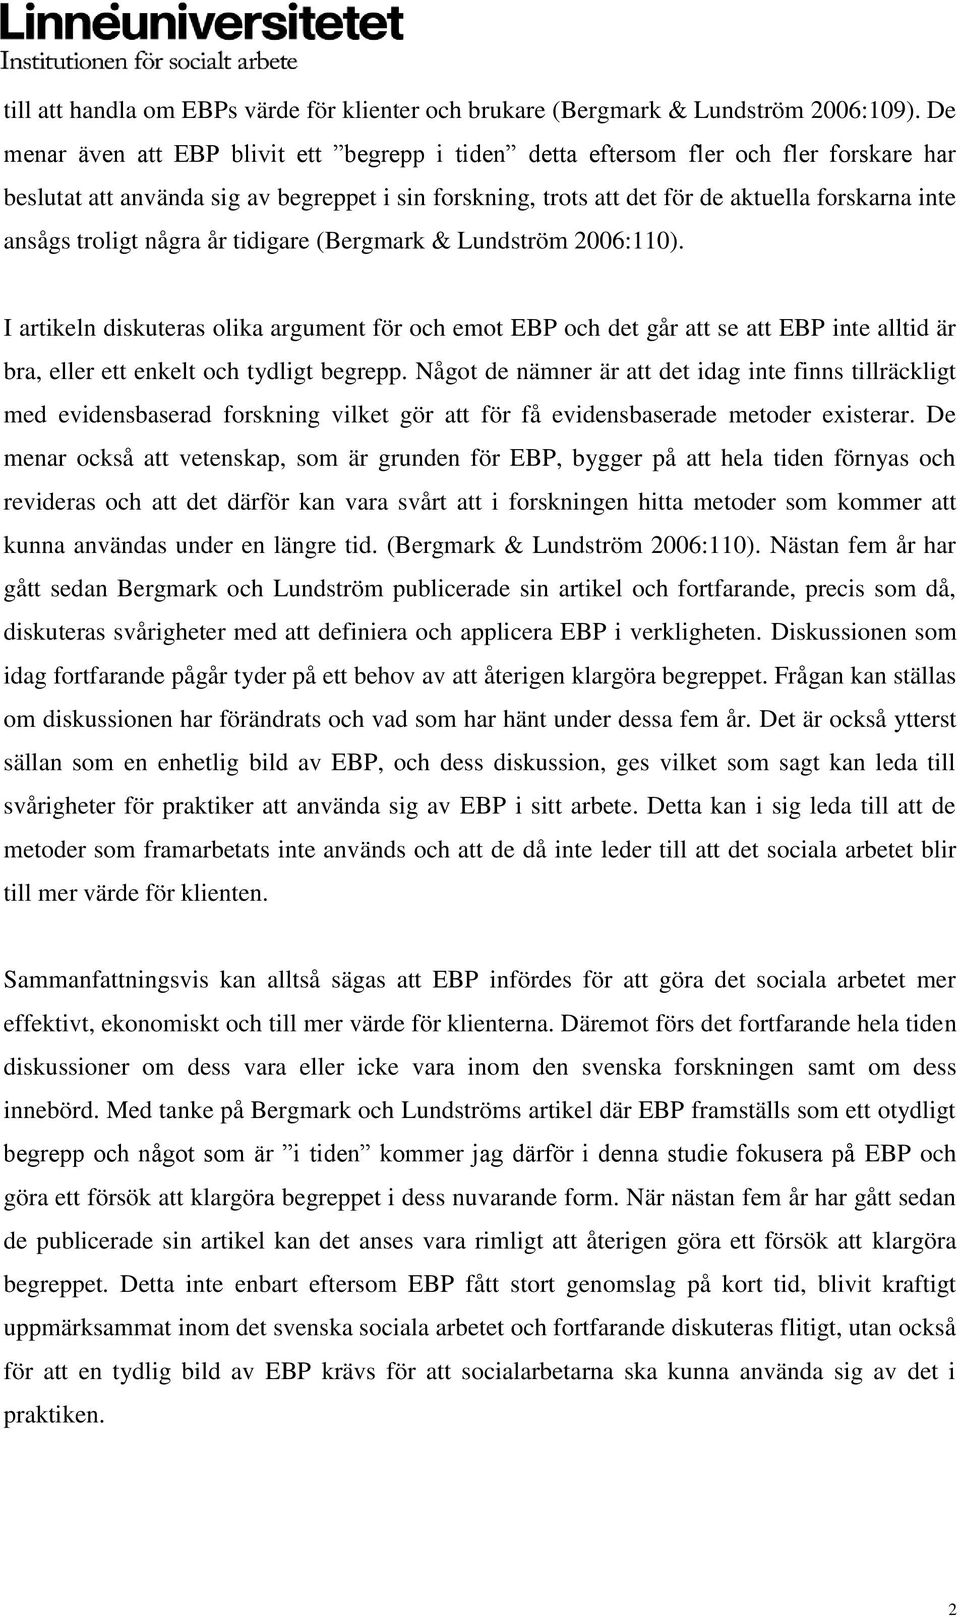 troligt några år tidigare (Bergmark & Lundström 2006:110). I artikeln diskuteras olika argument för och emot EBP och det går att se att EBP inte alltid är bra, eller ett enkelt och tydligt begrepp.